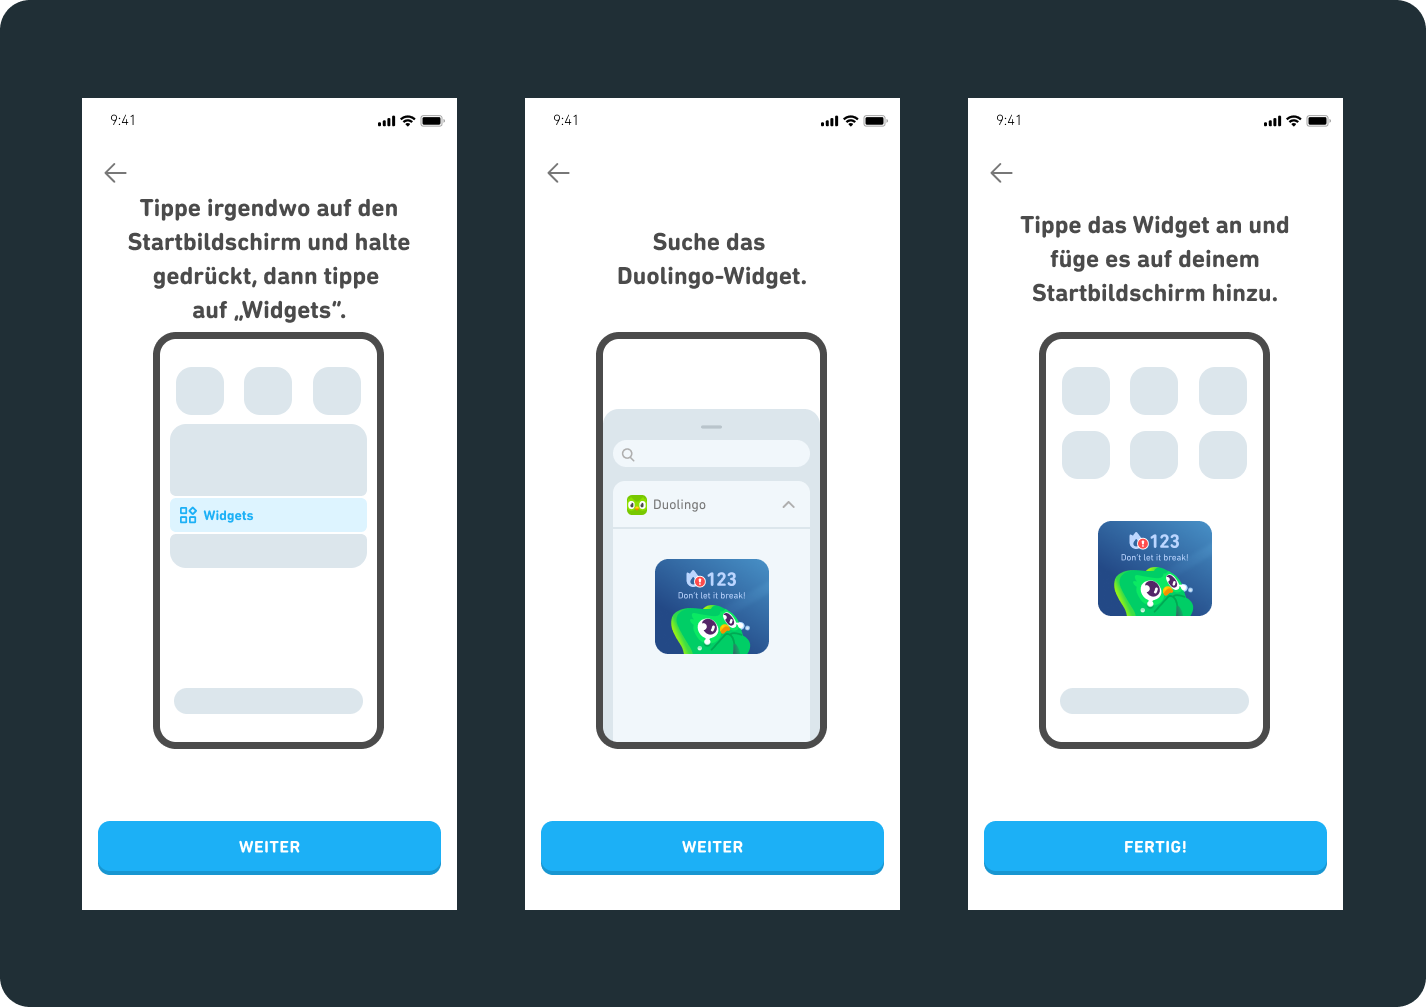 2 Bildschirme von Android-Smartphones mit einer Anleitung zur Installation des Widgets. 1) Tippe irgendwo auf den Startbildschirm und halte gedrückt, dann tippe auf „Widgets“. 2) Suche das Duolingo-Widget. 3) Tippe das Widget an und füge es auf deinem Startbildschirm hinzu.